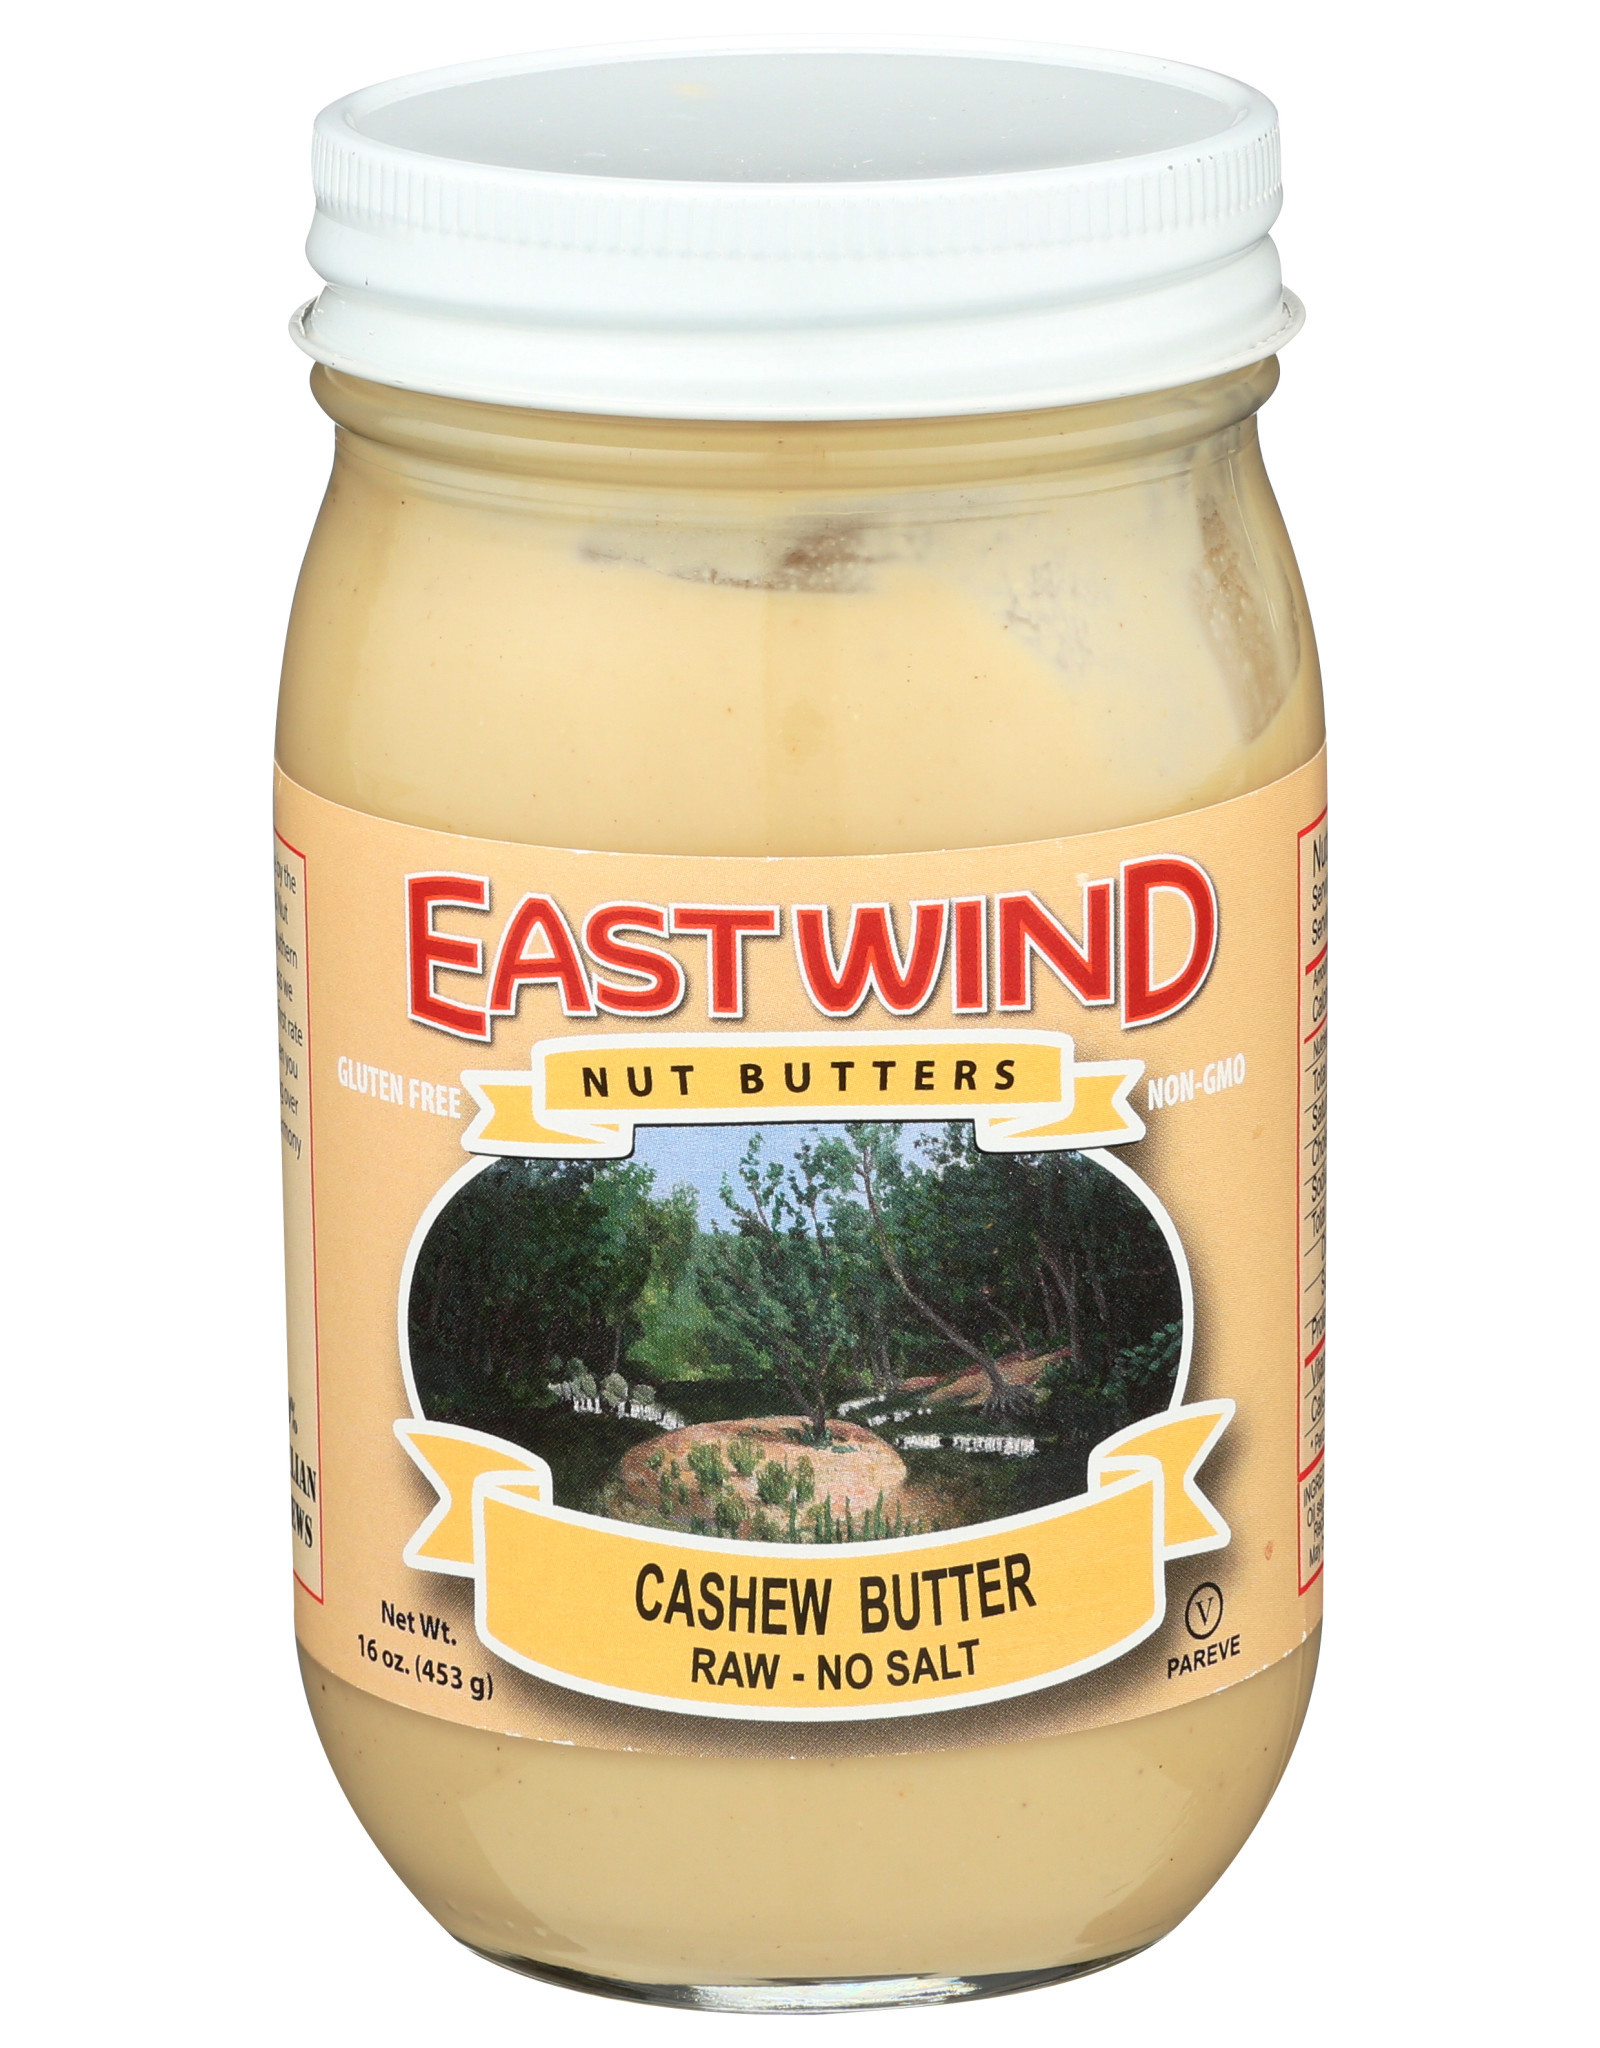 Eastwind Cashew Butter Raw No Salt 16 oz